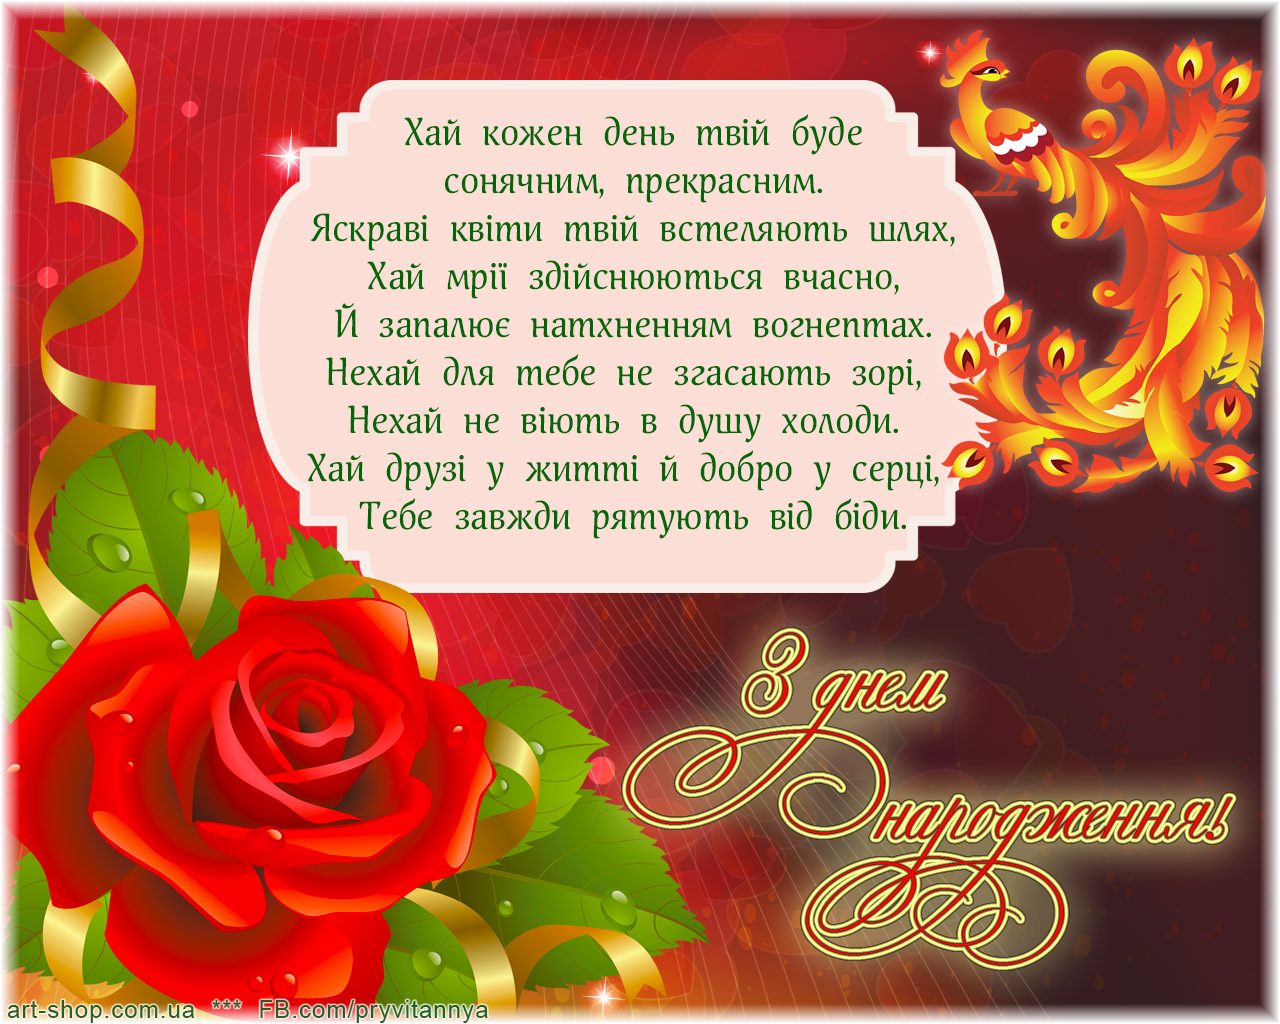 Привітання з днем народженням словами. Привітання з днем народження. Открытка с днем рождения на украинском. Поздравления с днём рождения на украинском языке. Красивое поздравление с днём рождения на украинском языке.